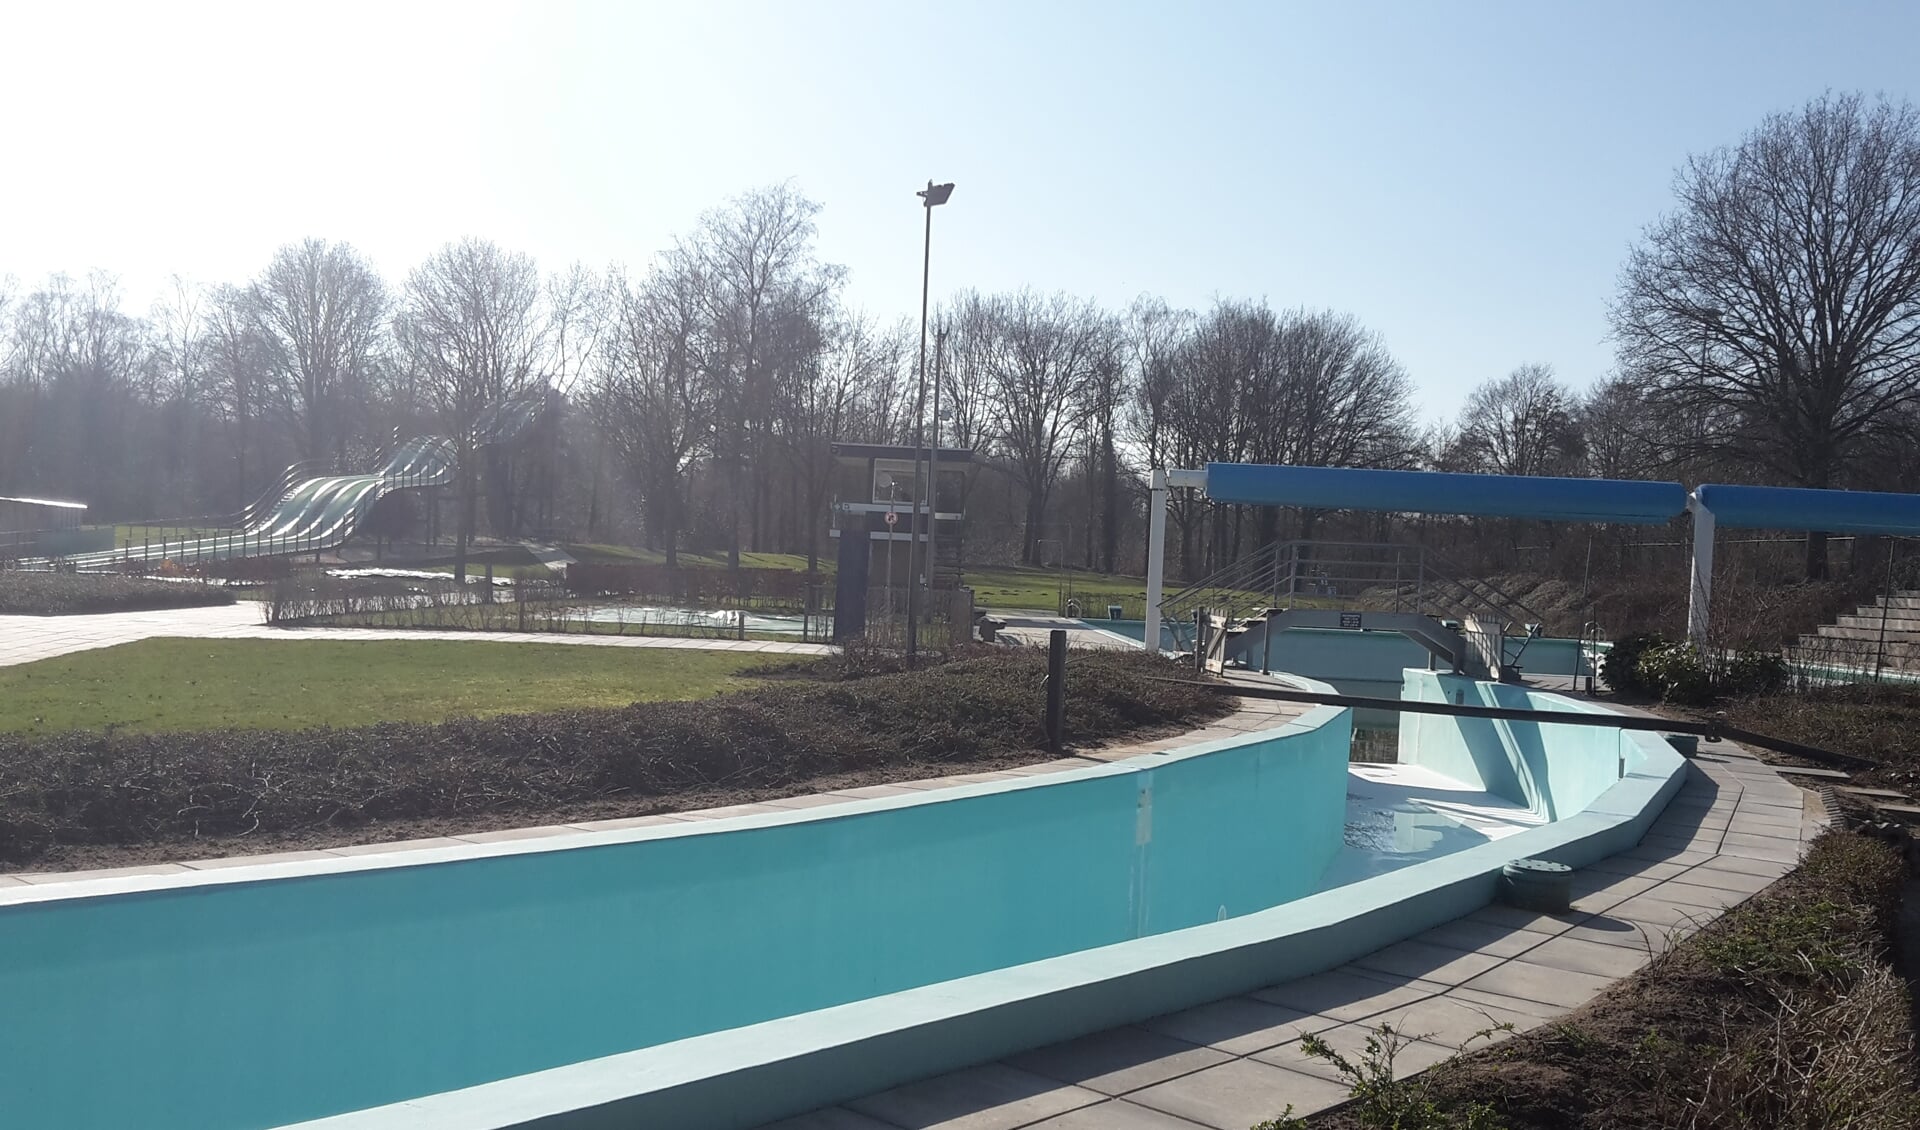 De gemeente Berkelland heeft De Meene groen licht gegeven om vanaf 1 april het zwembad al te openen. Foto: PR